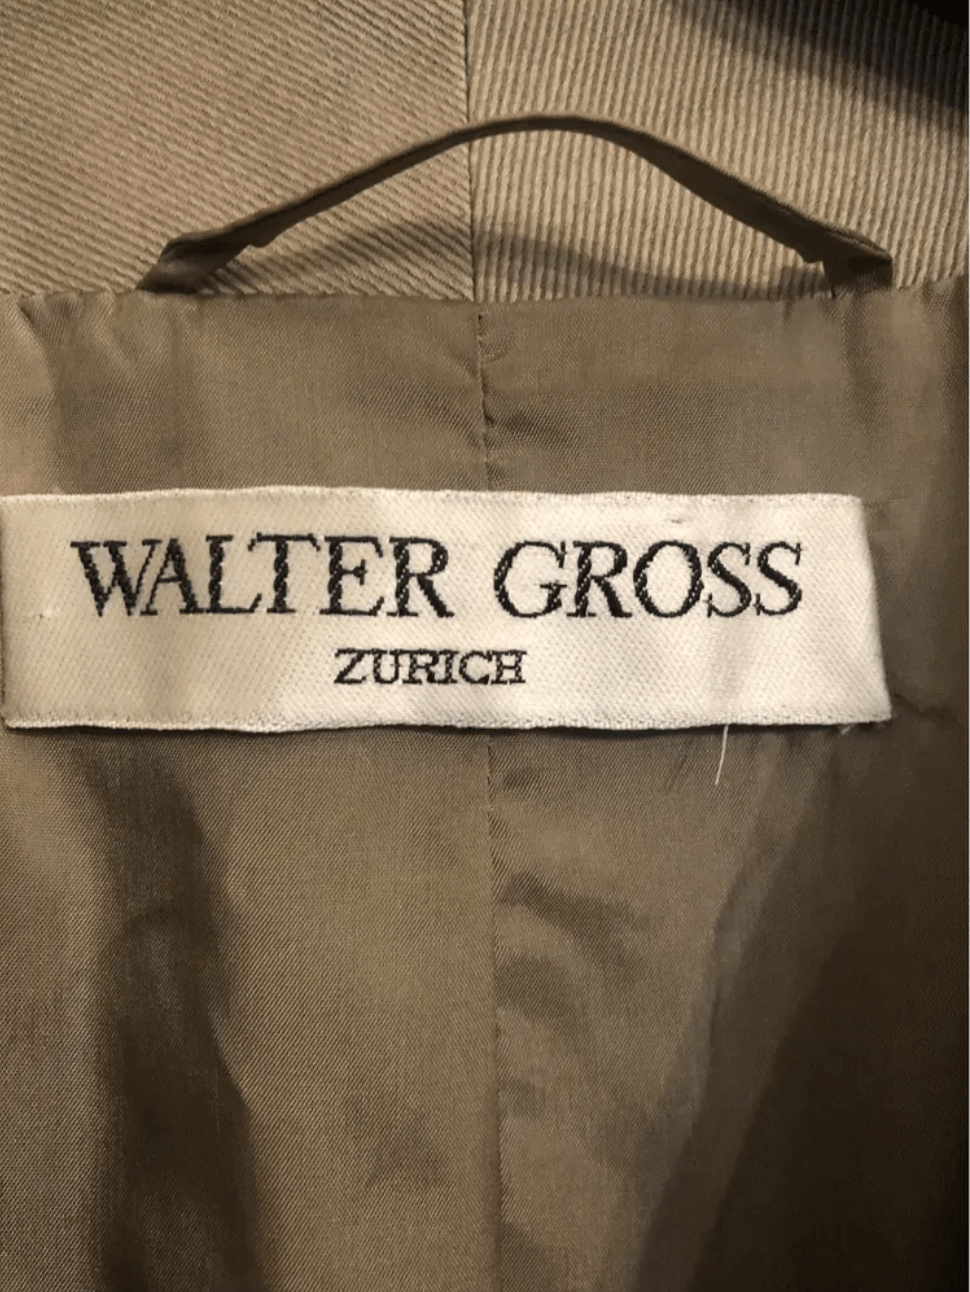 Walter Gross Zürich